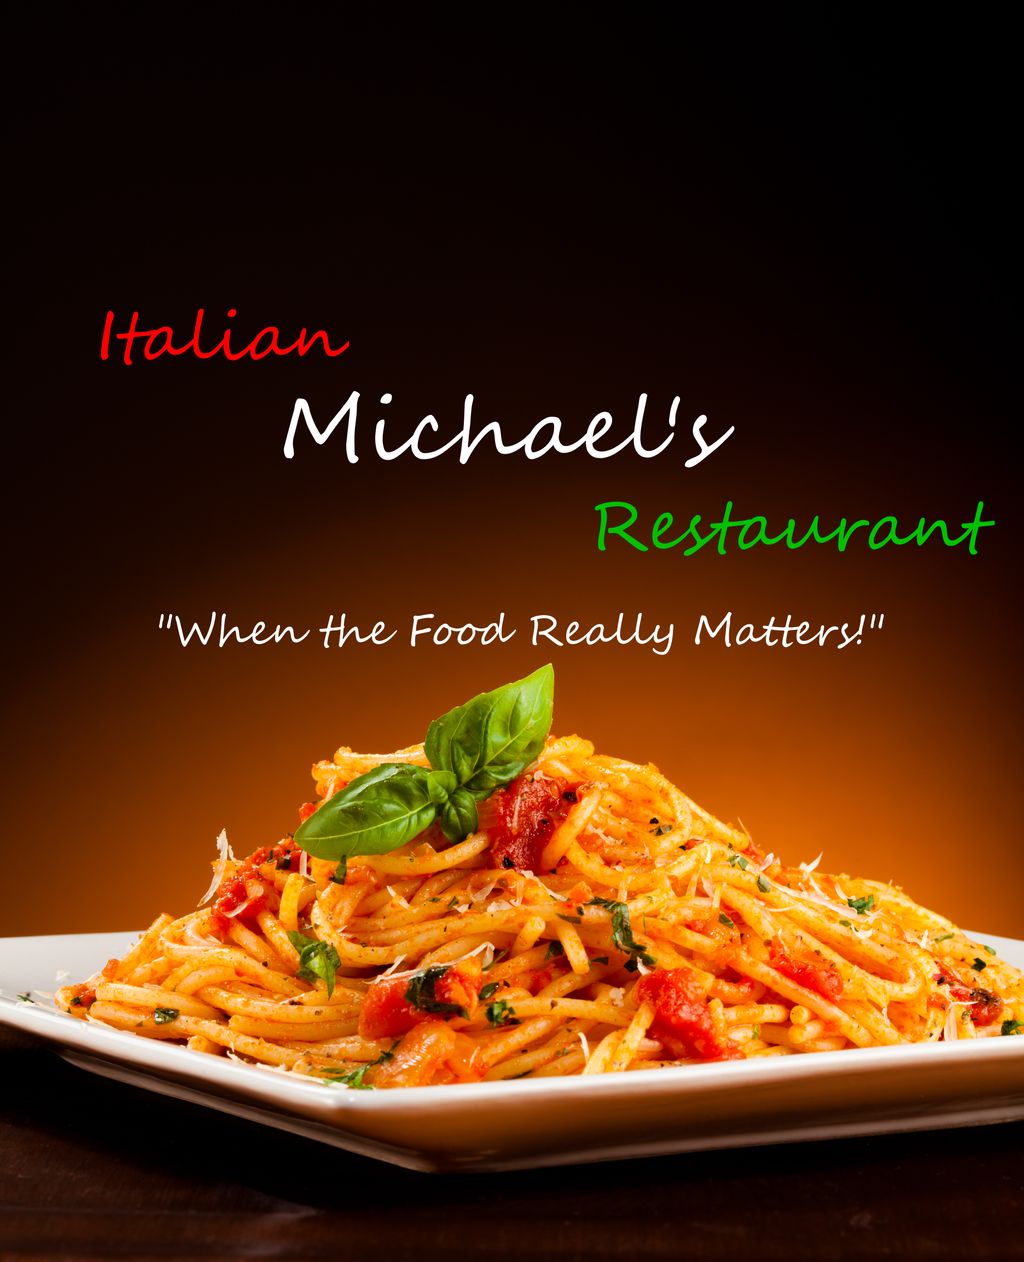 Michael's Italian Restaurant & Catering